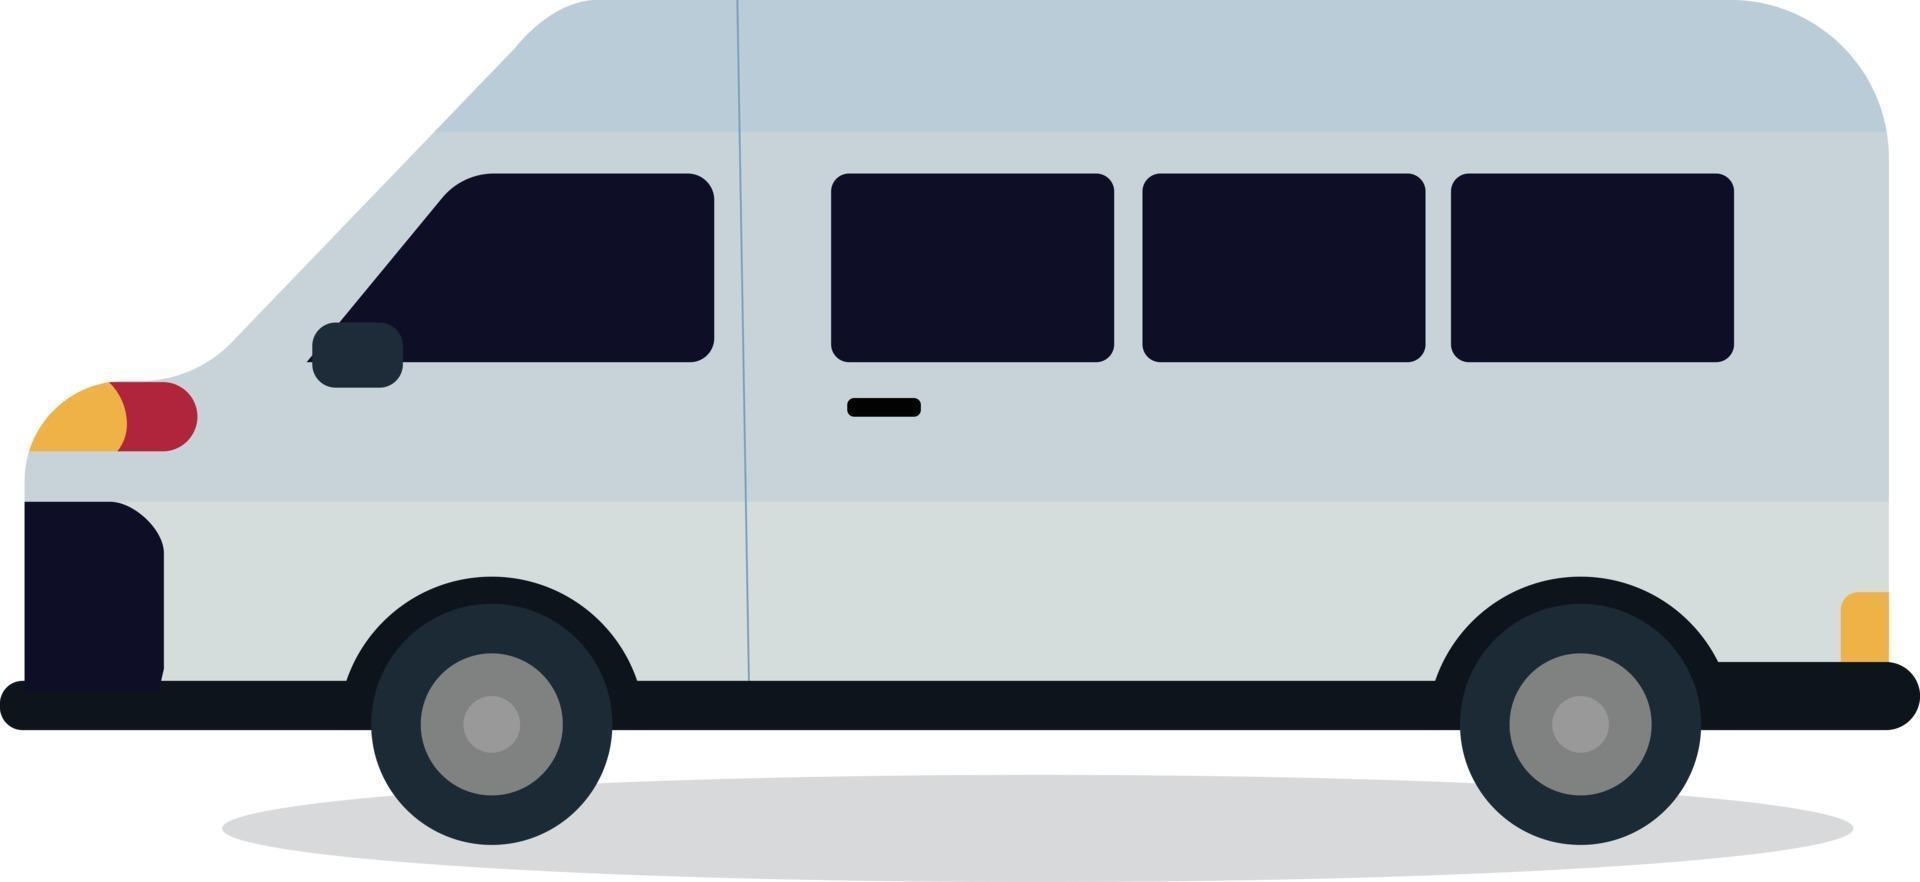 lindo diseño de furgoneta con vector blanco aislado.Estilo plano de mini bus.Concepto de coche de viaje.